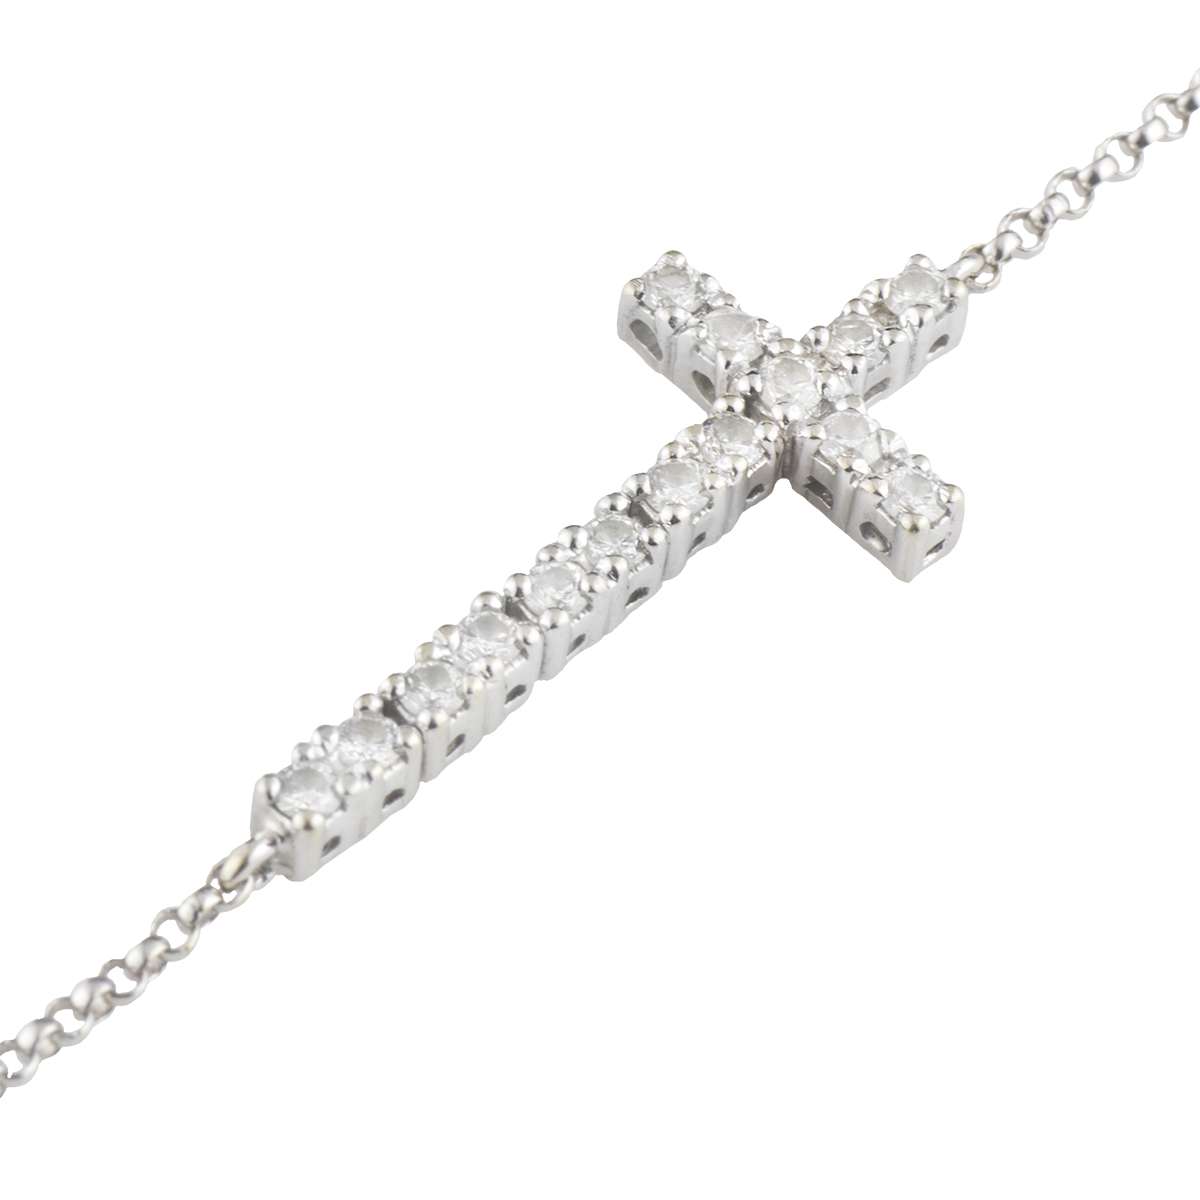 White Gold Diamond Cross Bracelet